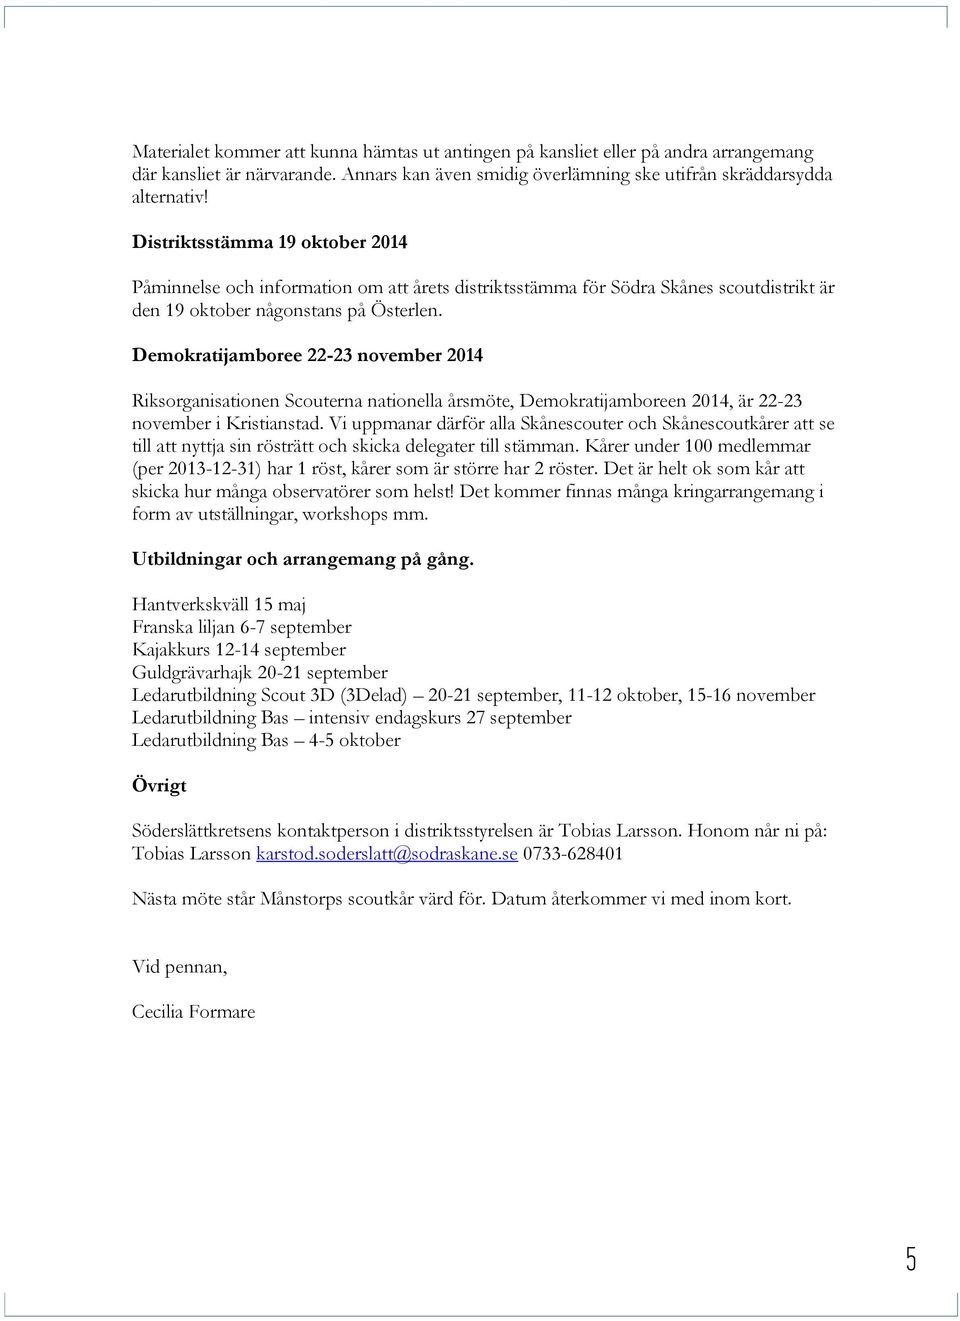 Demokratijamboree 22-23 november 2014 Riksorganisationen Scouterna nationella årsmöte, Demokratijamboreen 2014, är 22-23 november i Kristianstad.